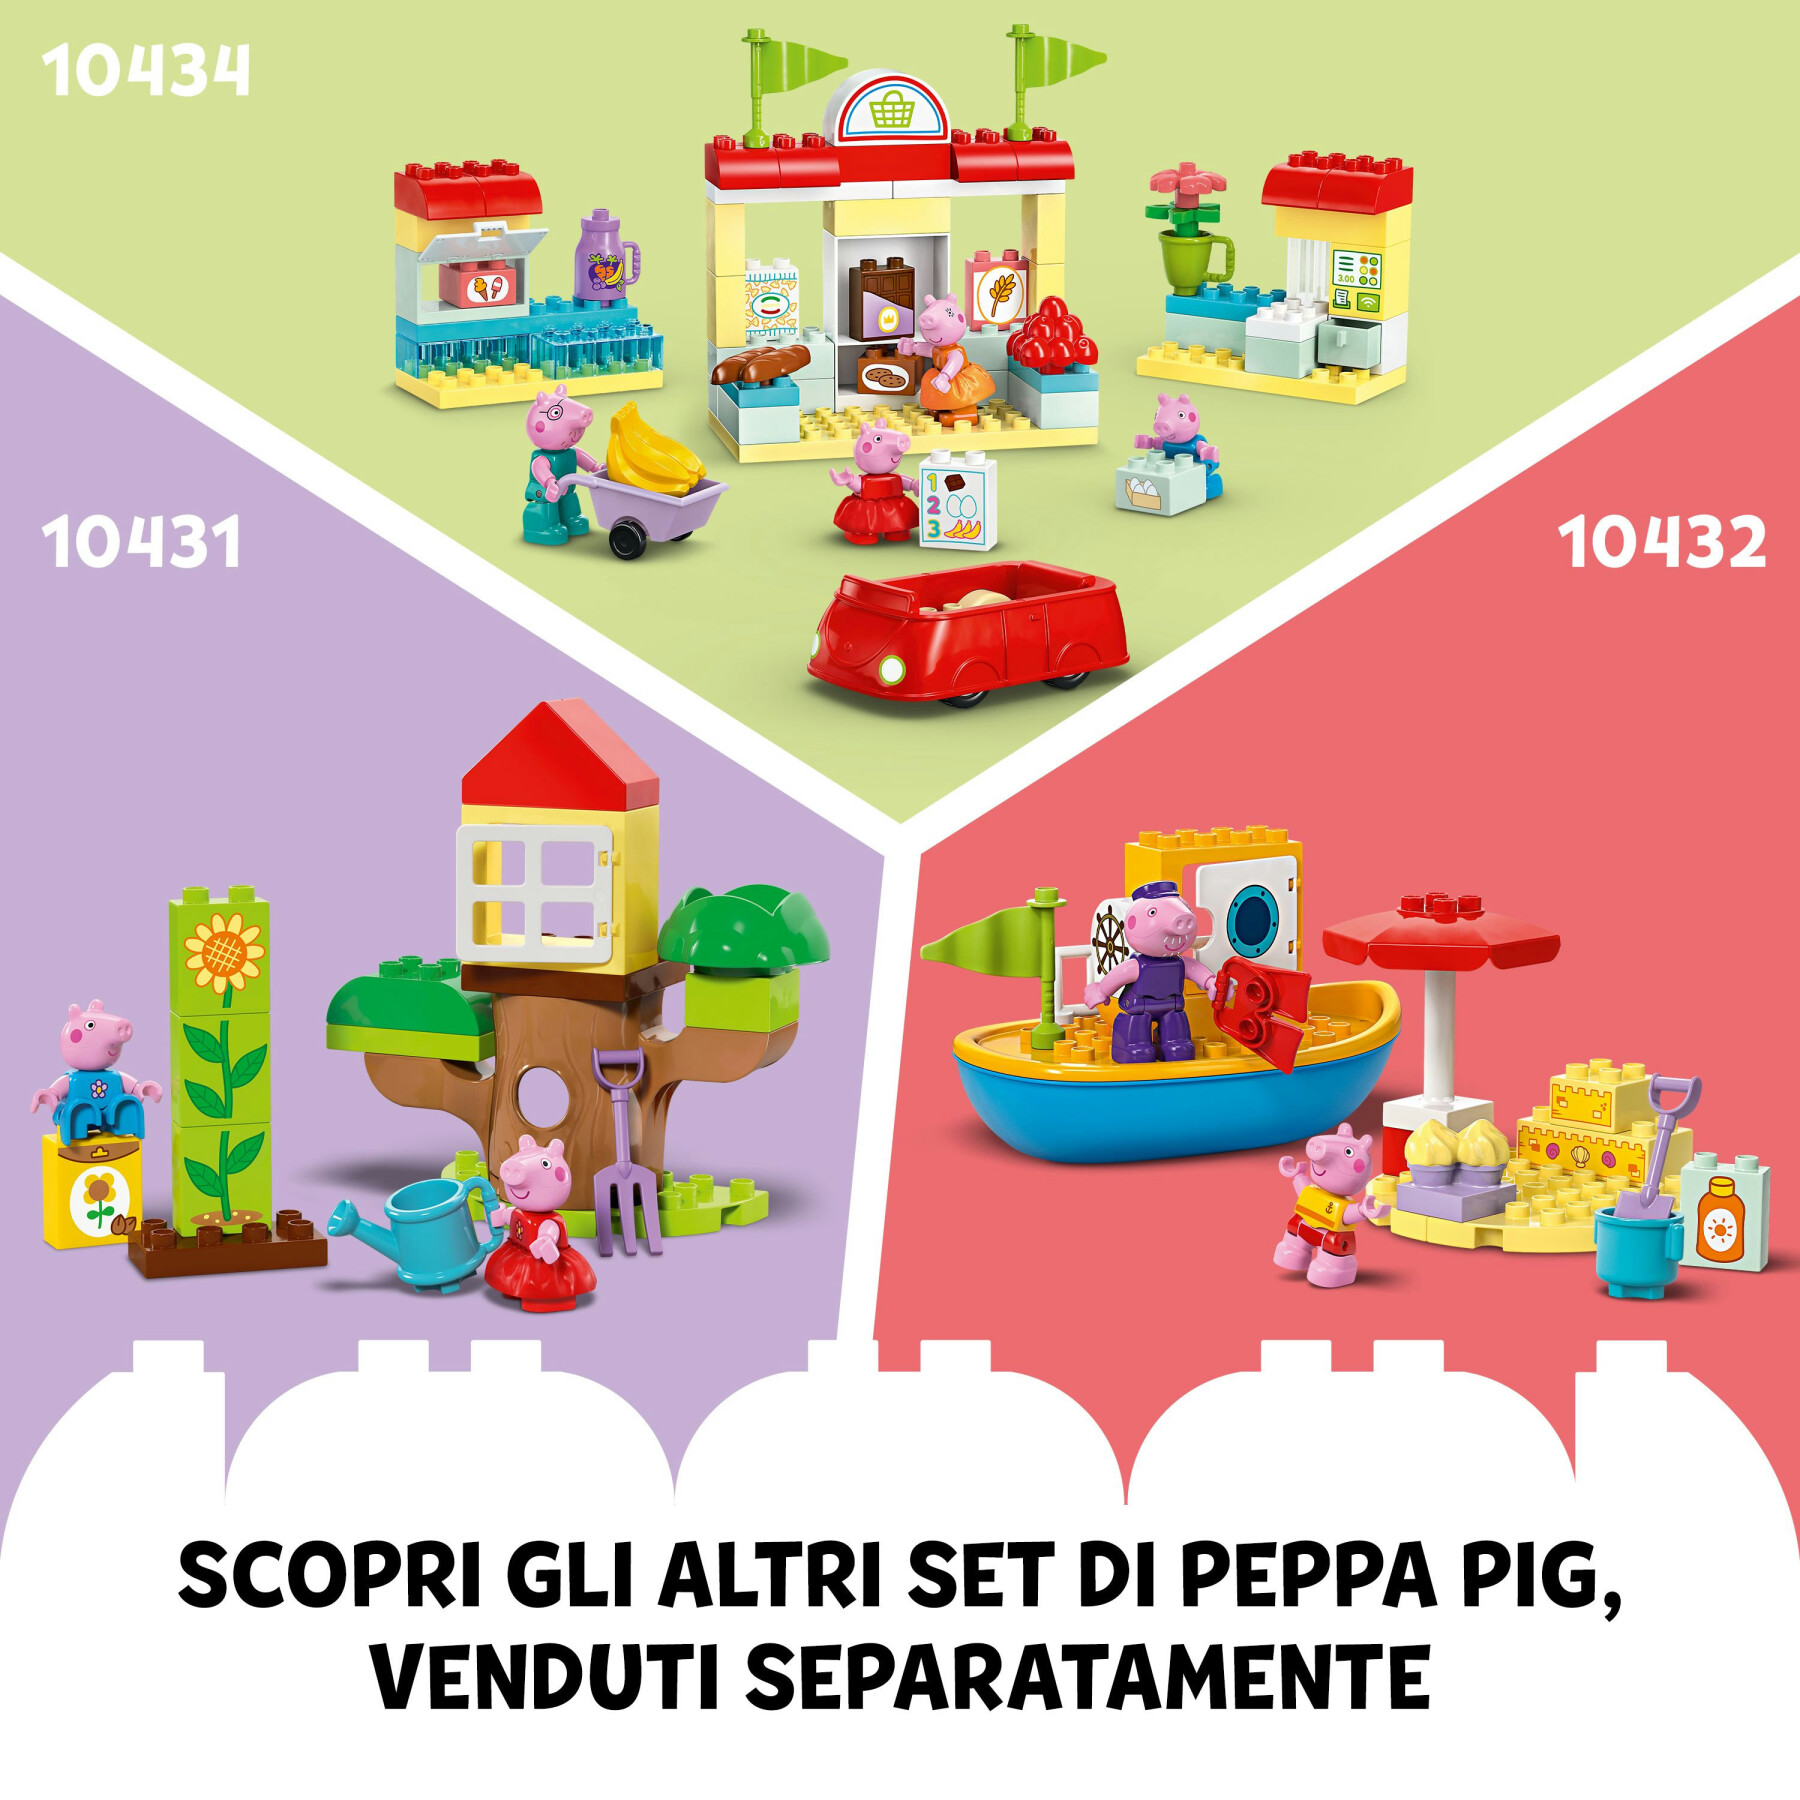 Lego duplo 10433 la casa del compleanno di peppa pig, giochi creativi per bambini 2+ anni con 3 personaggi, playset educativo - LEGO DUPLO, PEPPA PIG